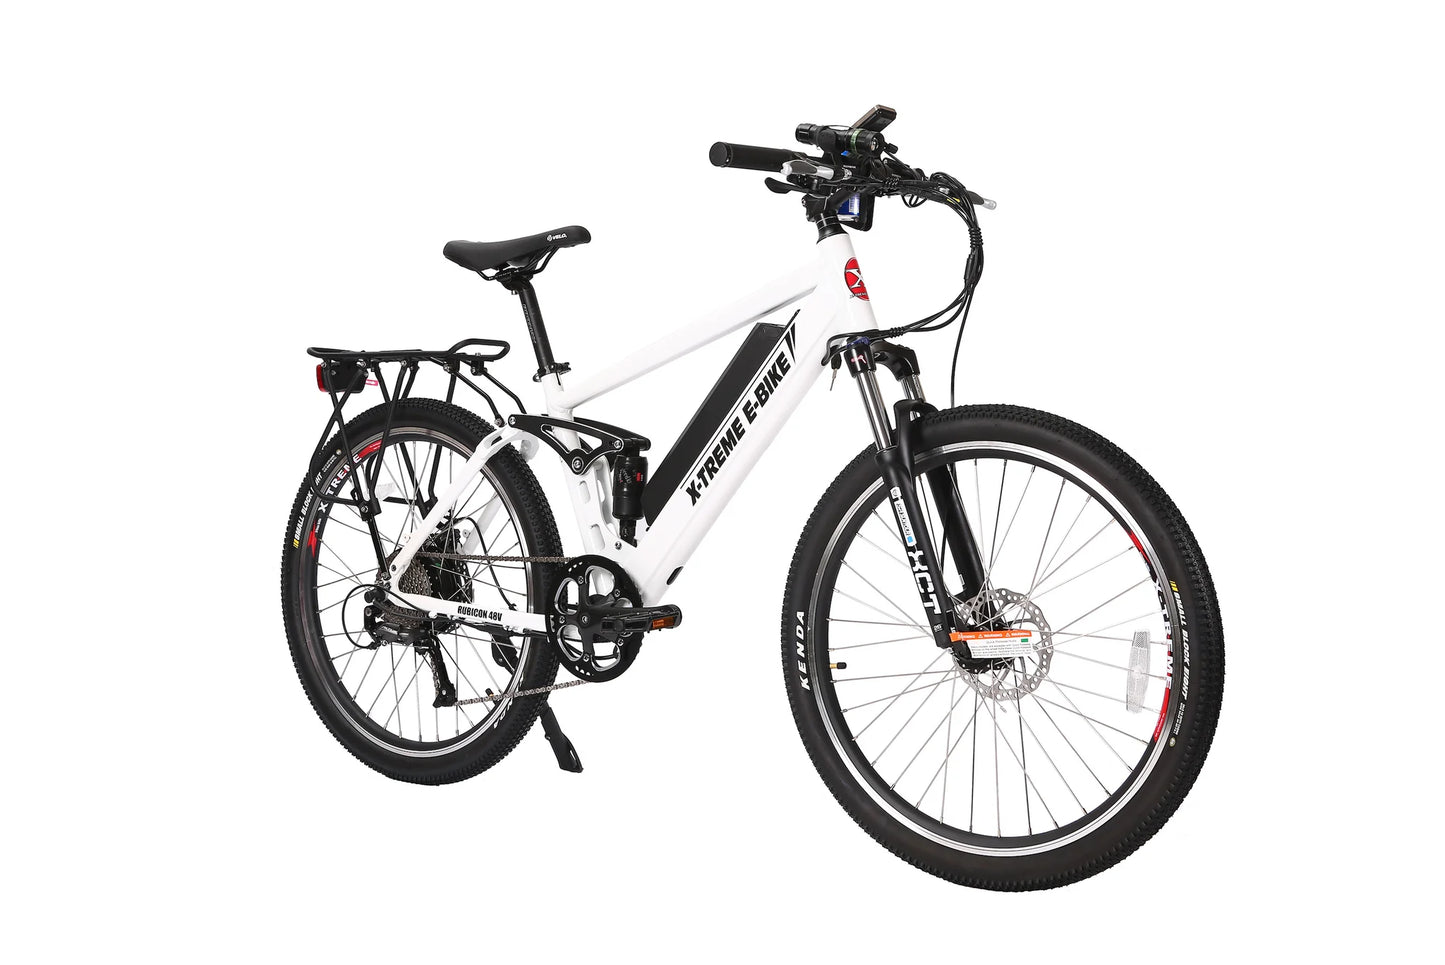 X-Treme Rubicon - Electric Bicycle - 48 Volt - Long Range - Mountain Bike